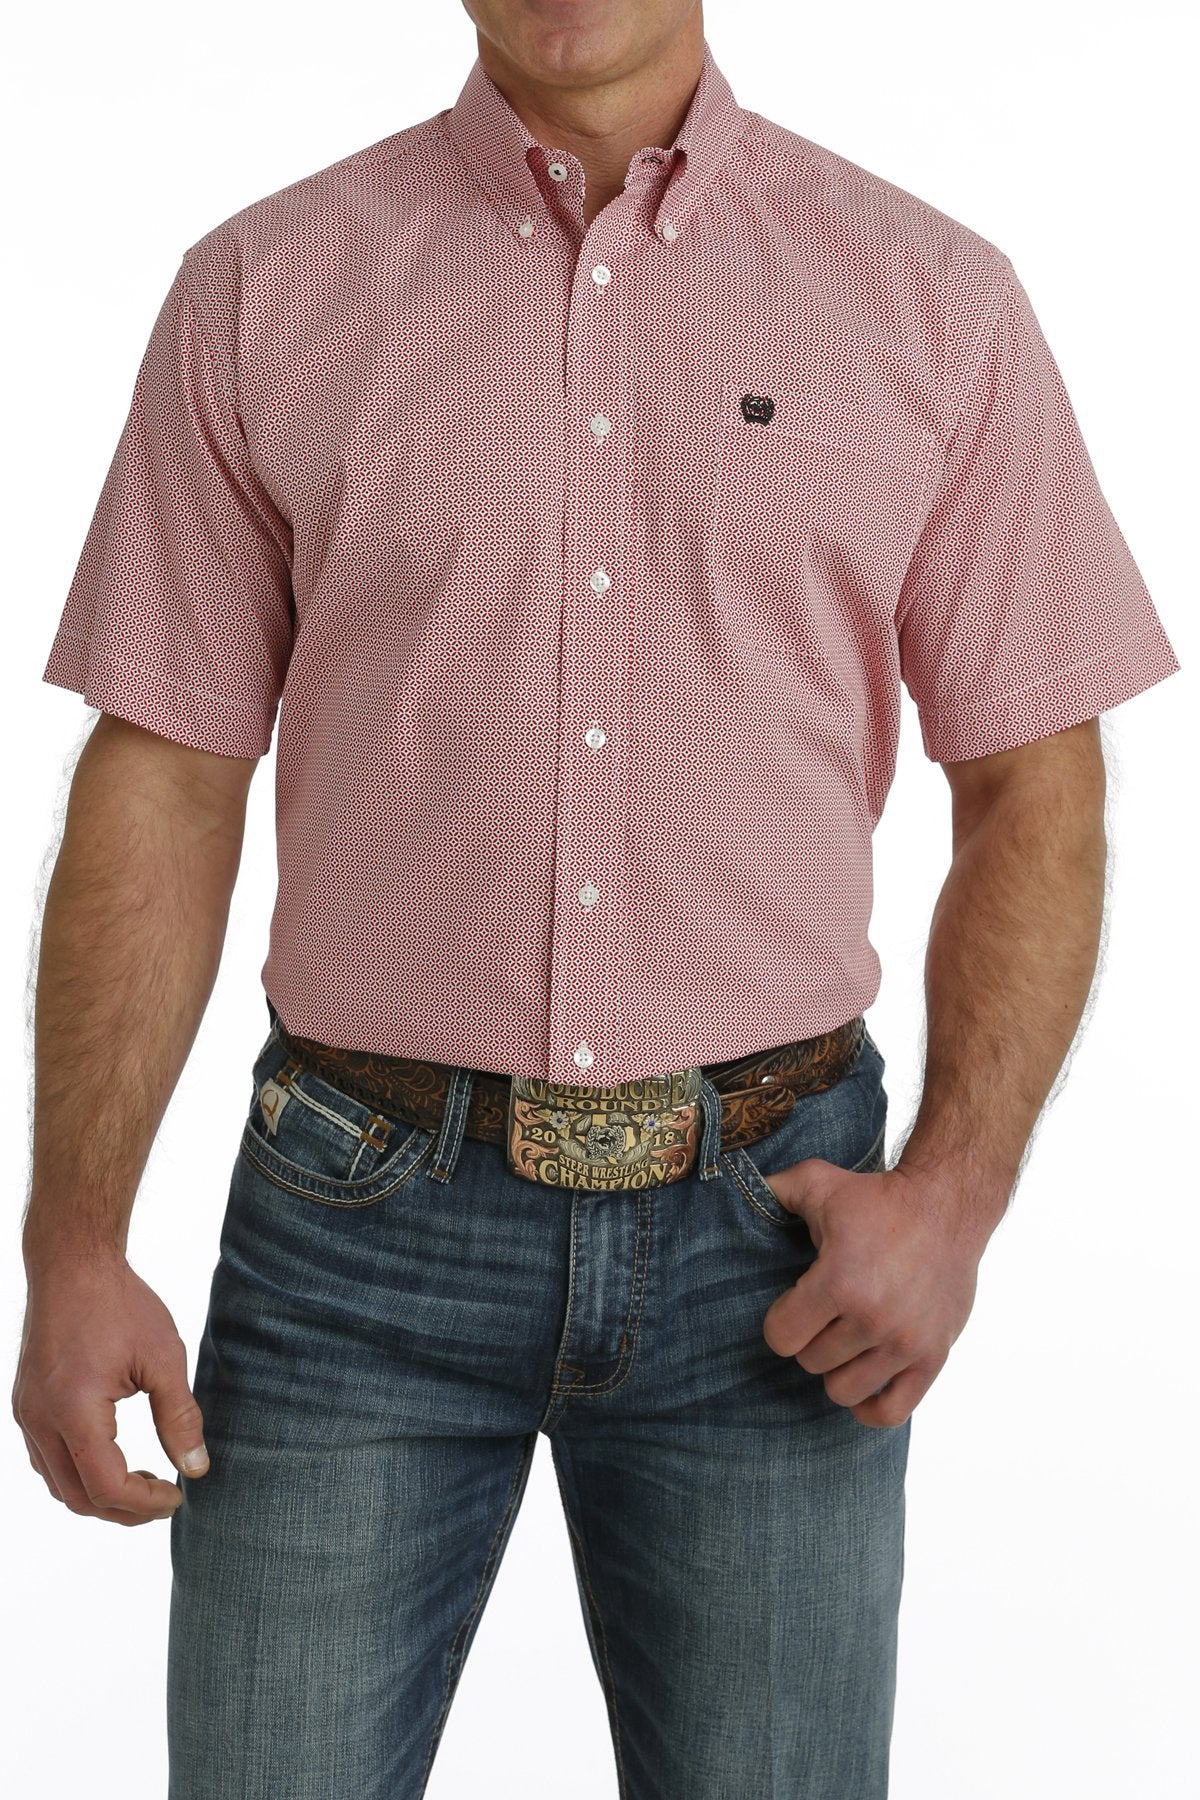 Cinch Geo Red Short Sleeve Men's Button Up Shirt